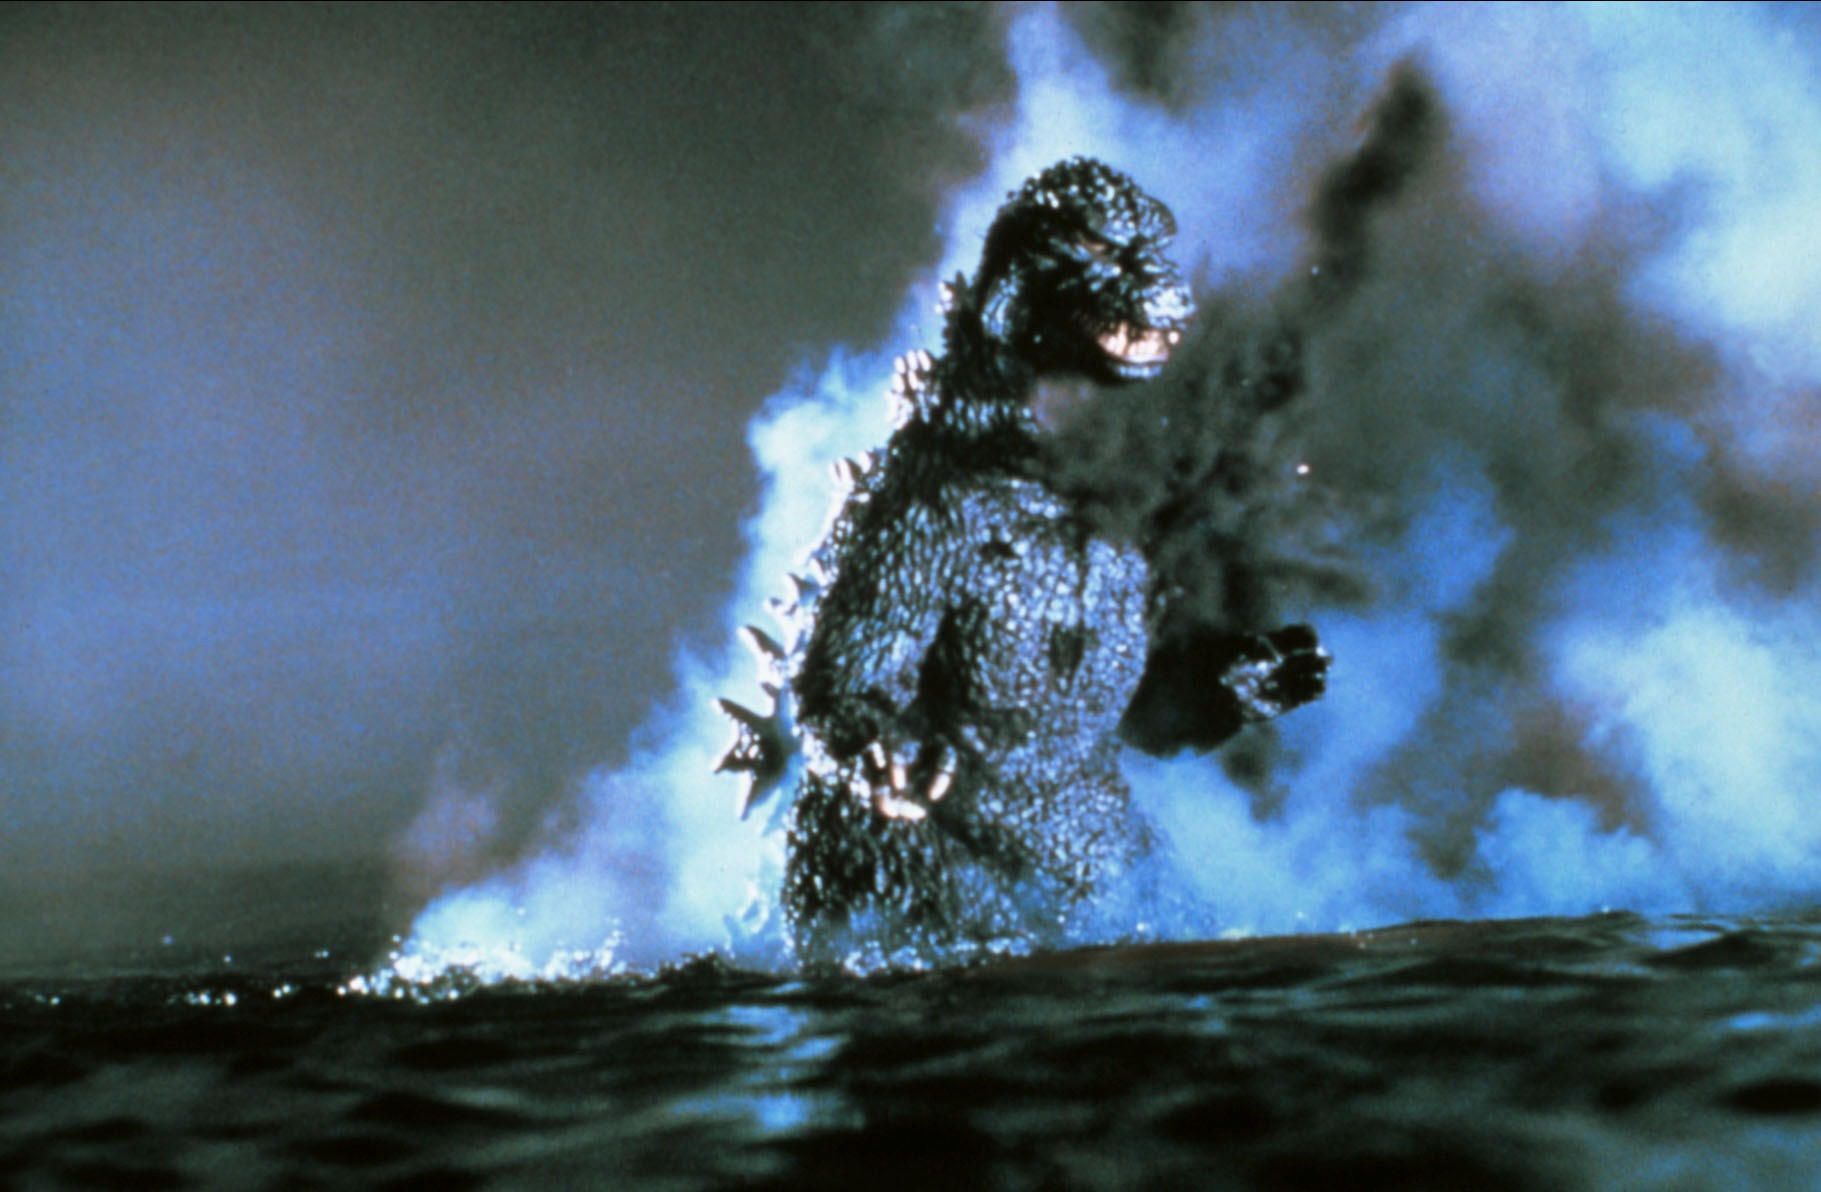 1984 bricht ein neues Zeitalter für die Godzilla-Filmreihe an. Das Monster wächst und wirkt furchteinflößender. Der charakteristische Hitzestrahl wird erstmals computeranimiert.